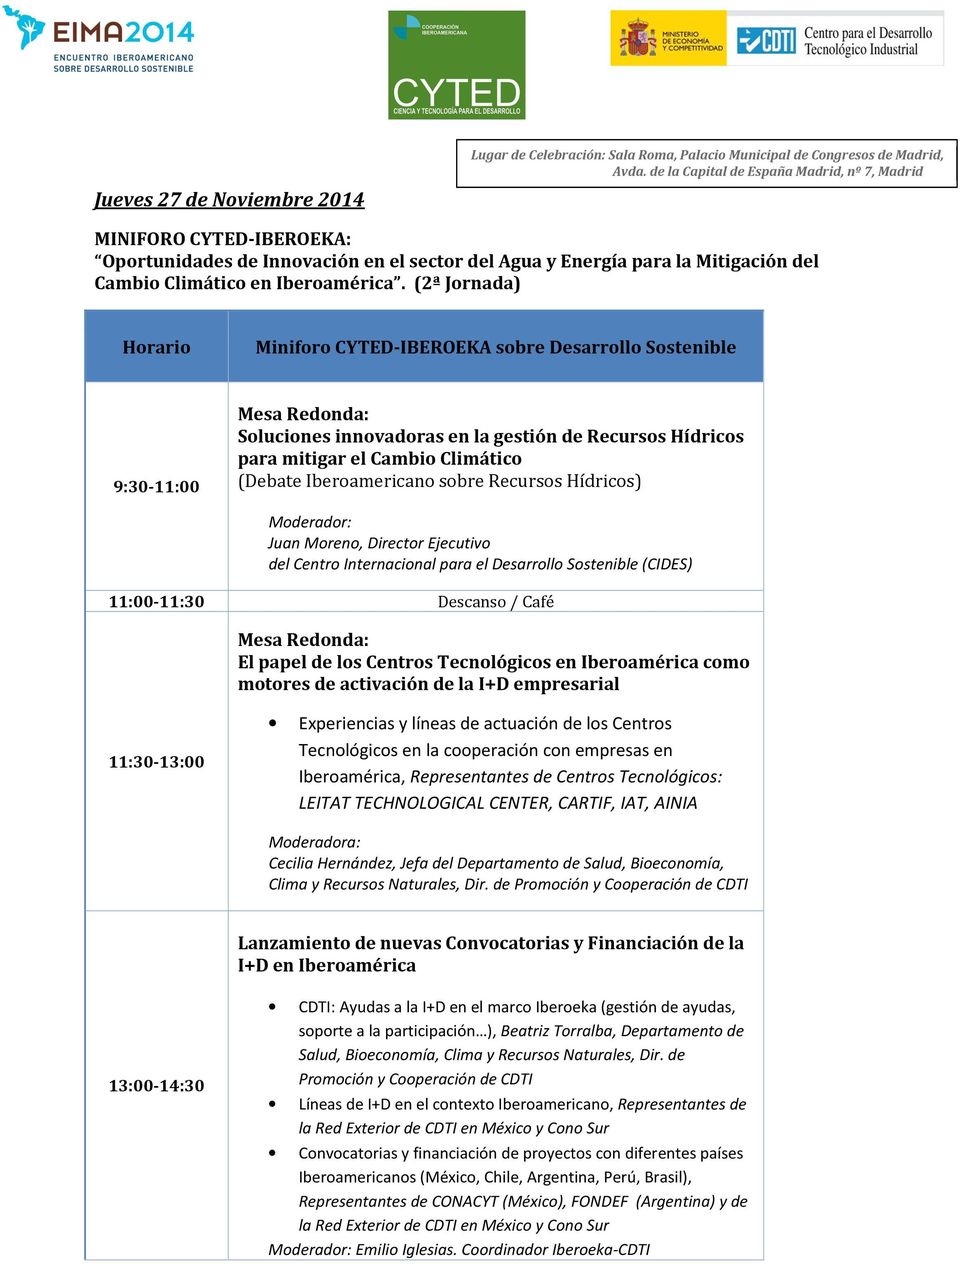 (2ª Jornada) Horario Miniforo CYTED-IBEROEKA sobre Desarrollo Sostenible 9:30-11:00 Soluciones innovadoras en la gestión de Recursos Hídricos para mitigar el Cambio Climático (Debate Iberoamericano